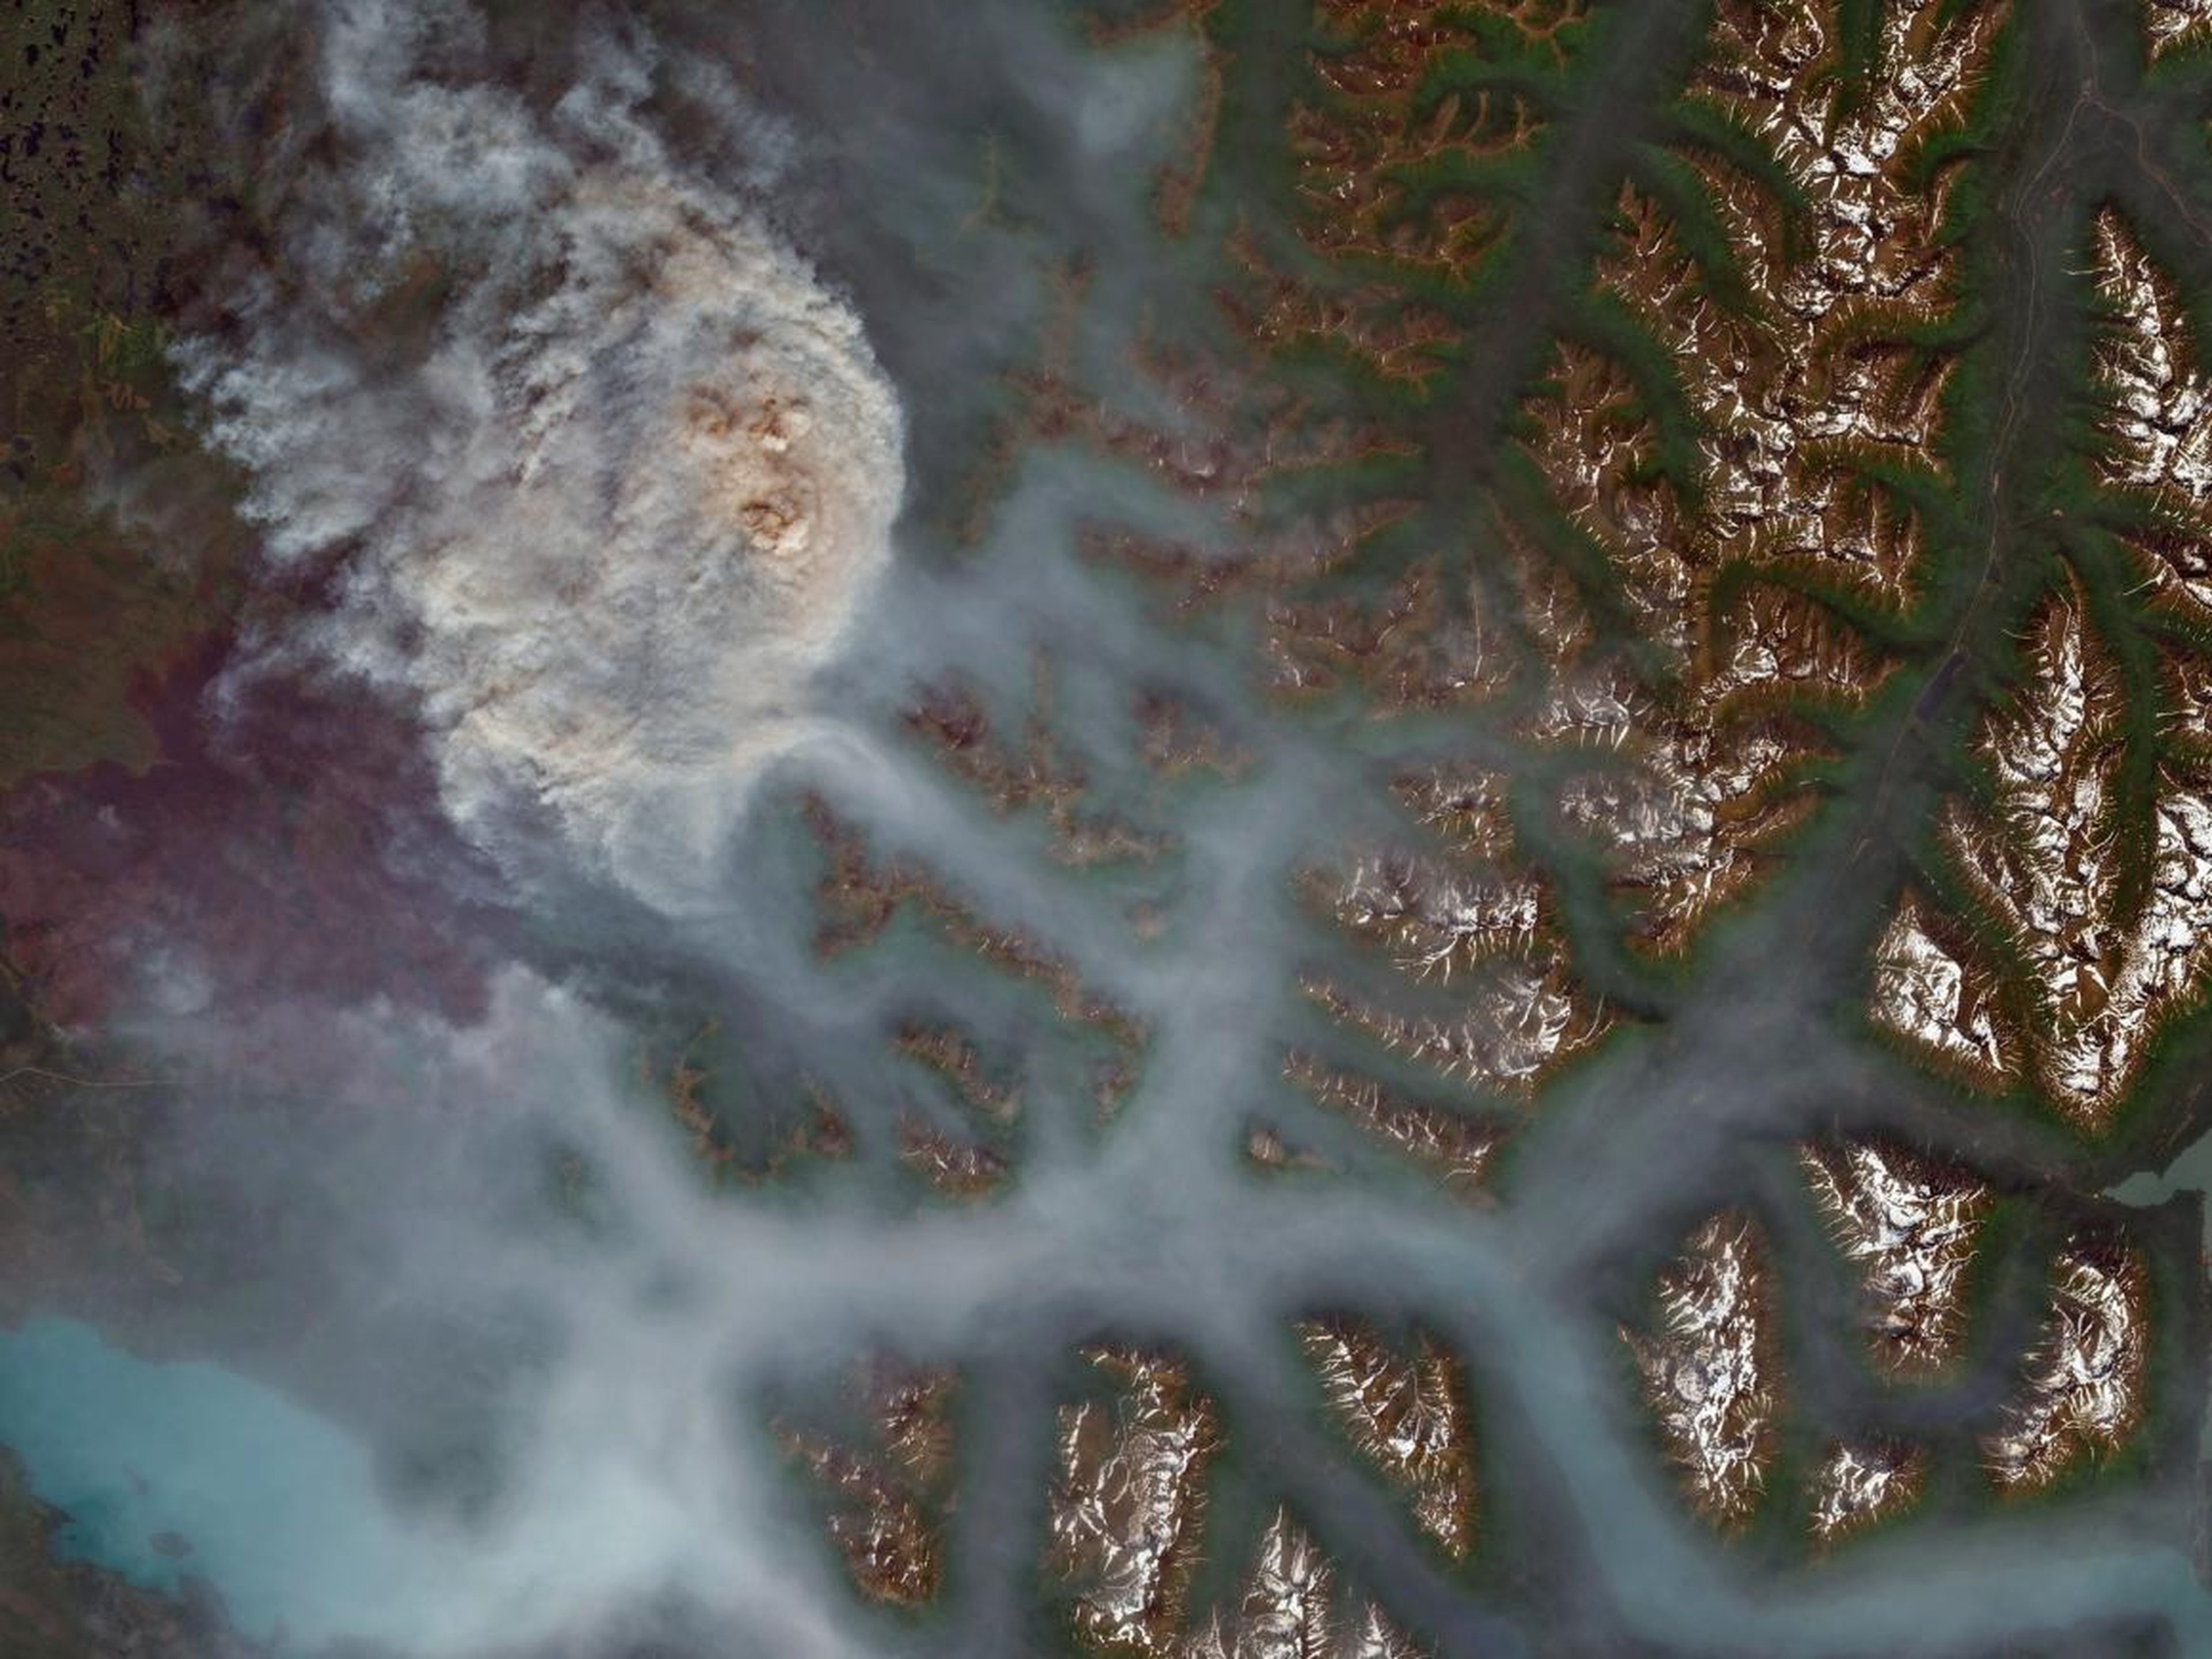 Swan Lake, ubicado a 8 km al noreste de Sterling, Alaska, se incendió el 29 de junio de 2019.